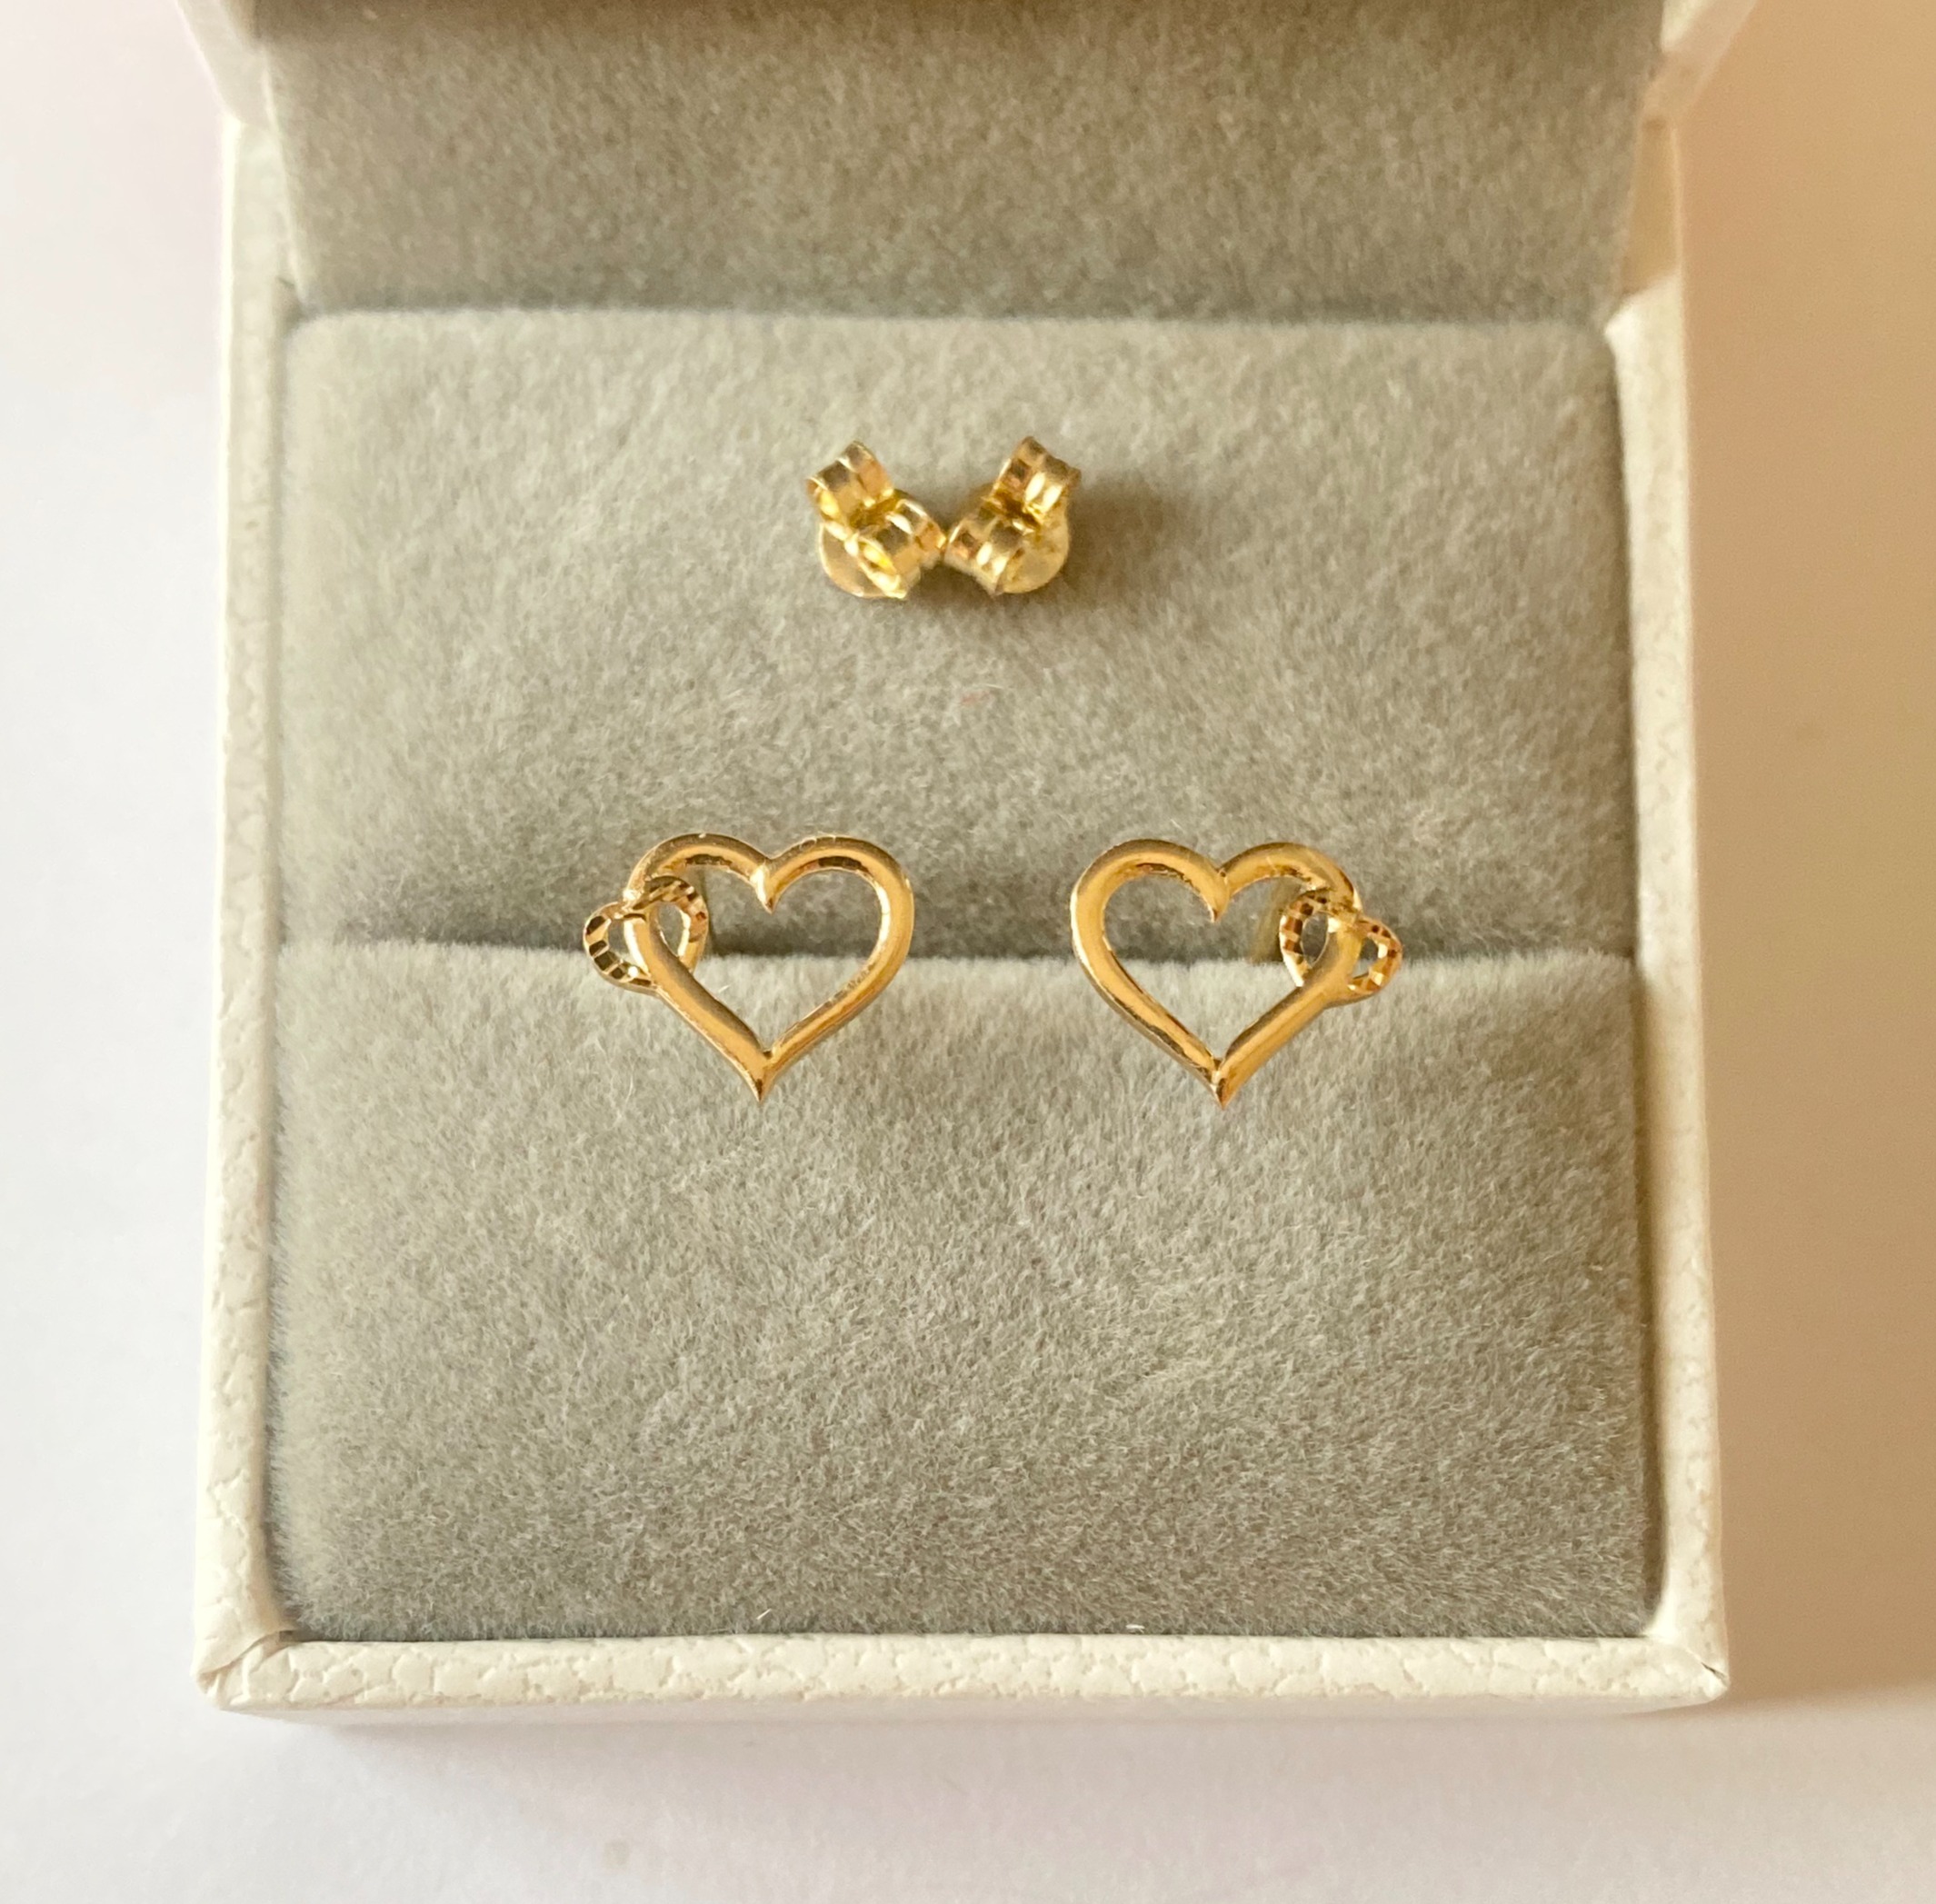 Buy quality Opulent gold heart earrings in Pune